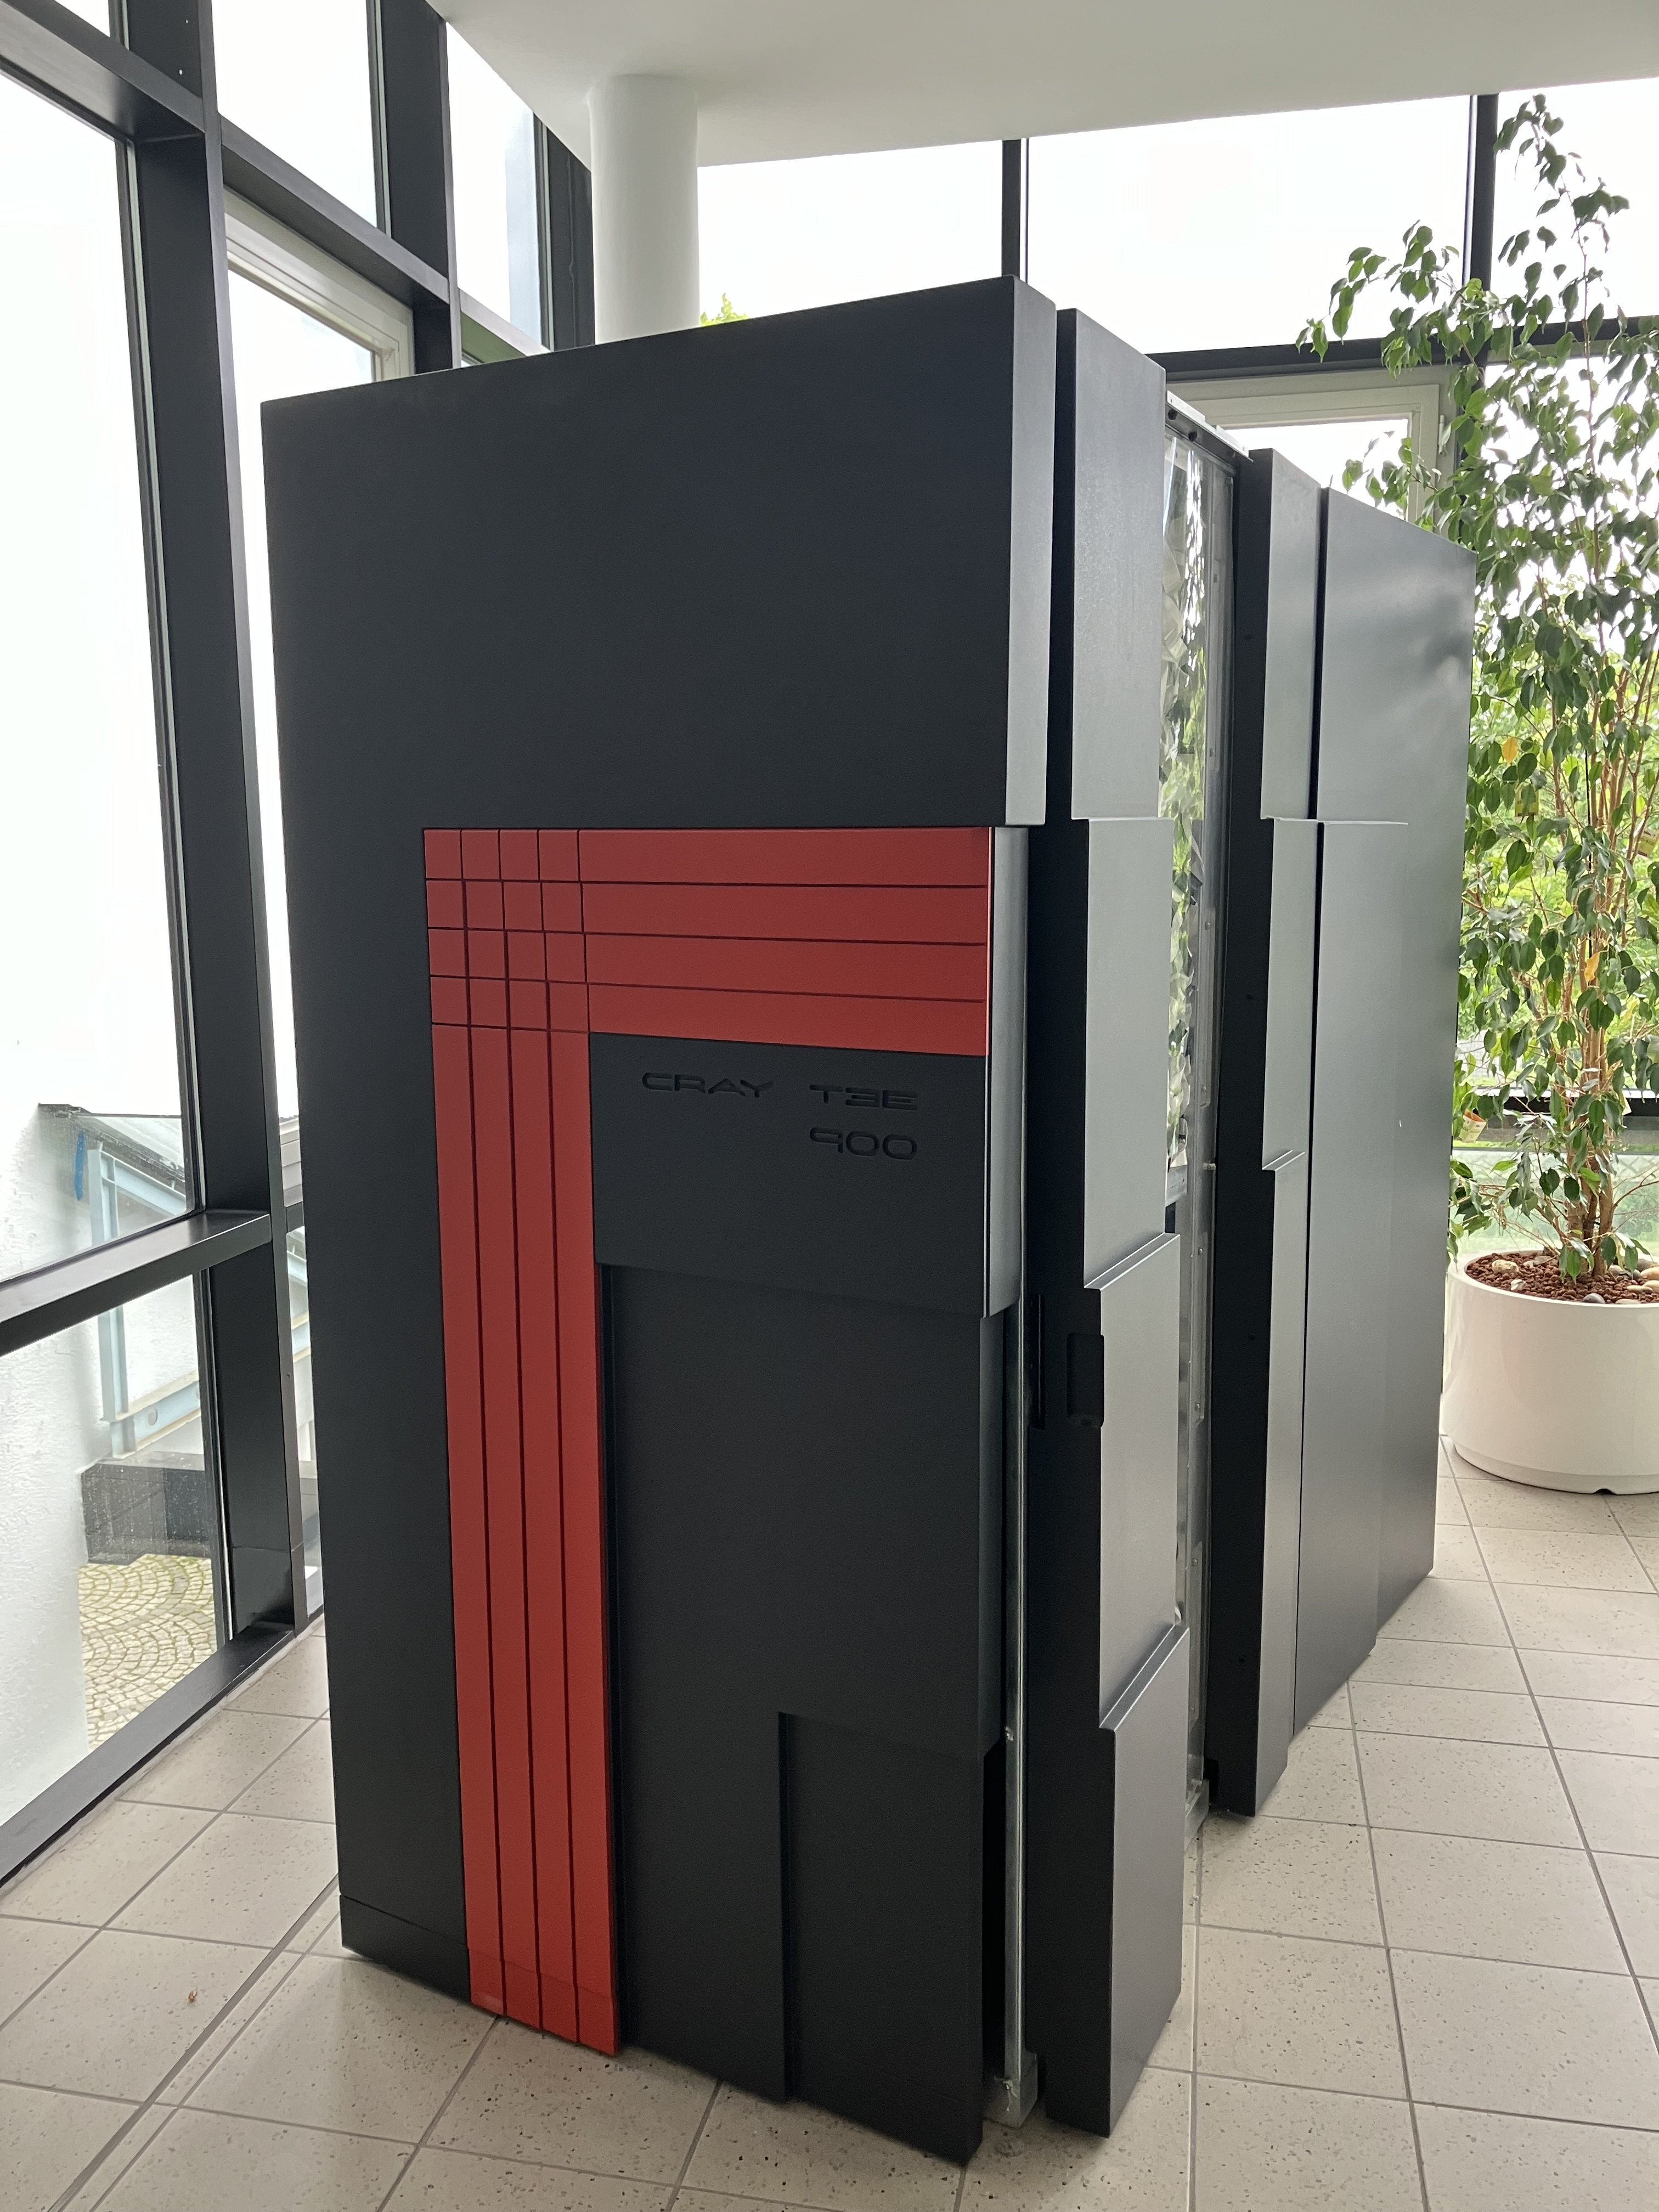 Cray T3E-900 (Computerhistorische Sammlung des Zuse-Institut Berlin CC0)